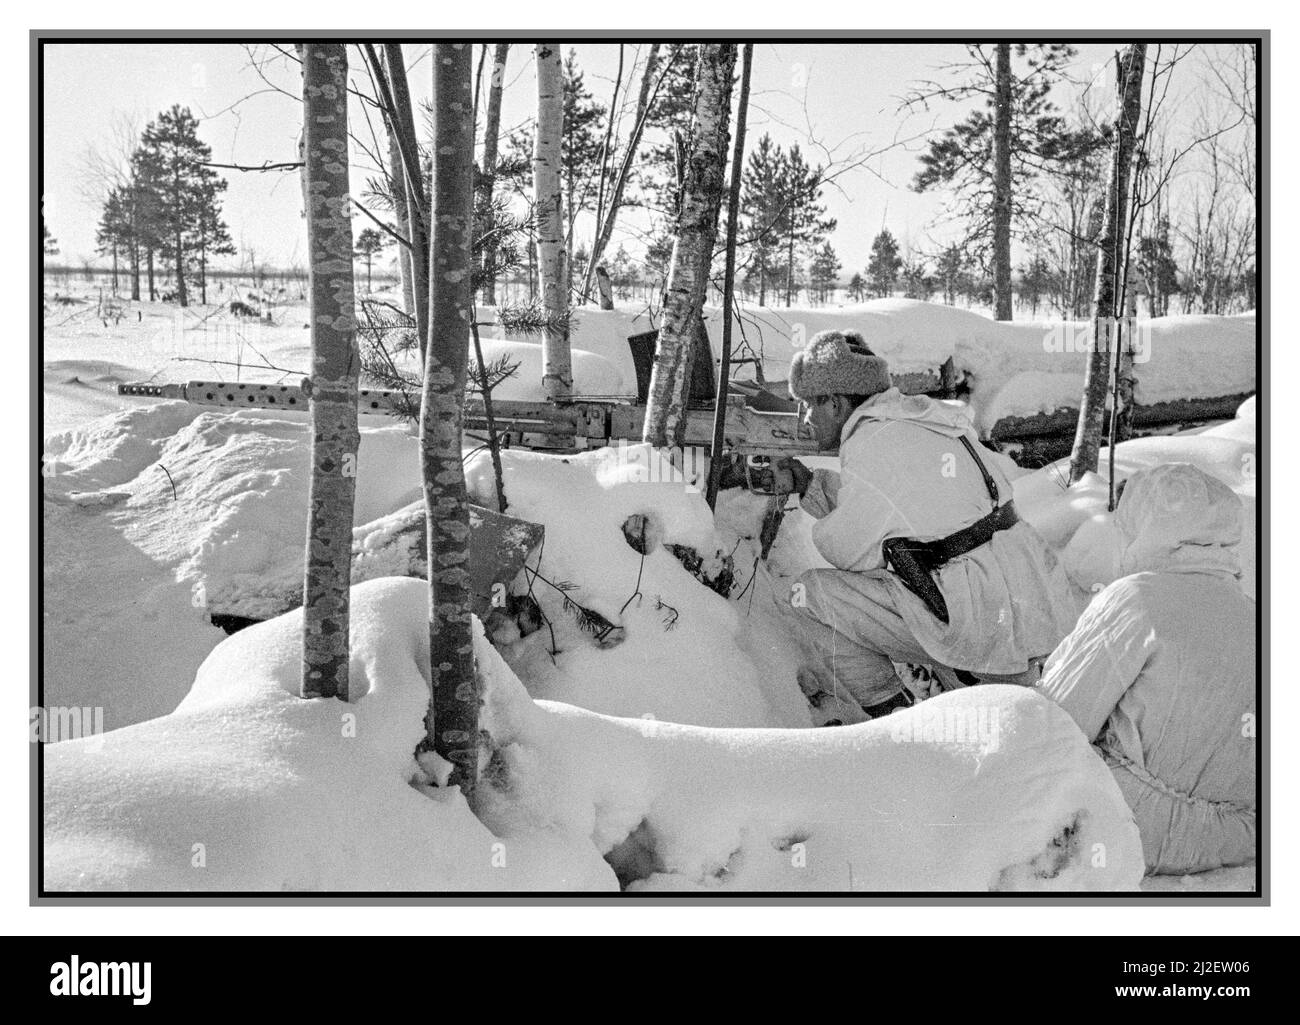 FINLANDE FINLANDE POURSUITE DE LA GUERRE HIVER NEIGE WW2 Lahti finlandais L-39 un fusil anti-char tiré sur une neige couvrait le dugout russe dans le canal de Staline pendant l'hiver Finlande continuation de la guerre. Les Soviétiques retournent le feu avec des mitrailleuses. Date 20 février 1942 attribution : Musée militaire de Finlande Banque D'Images